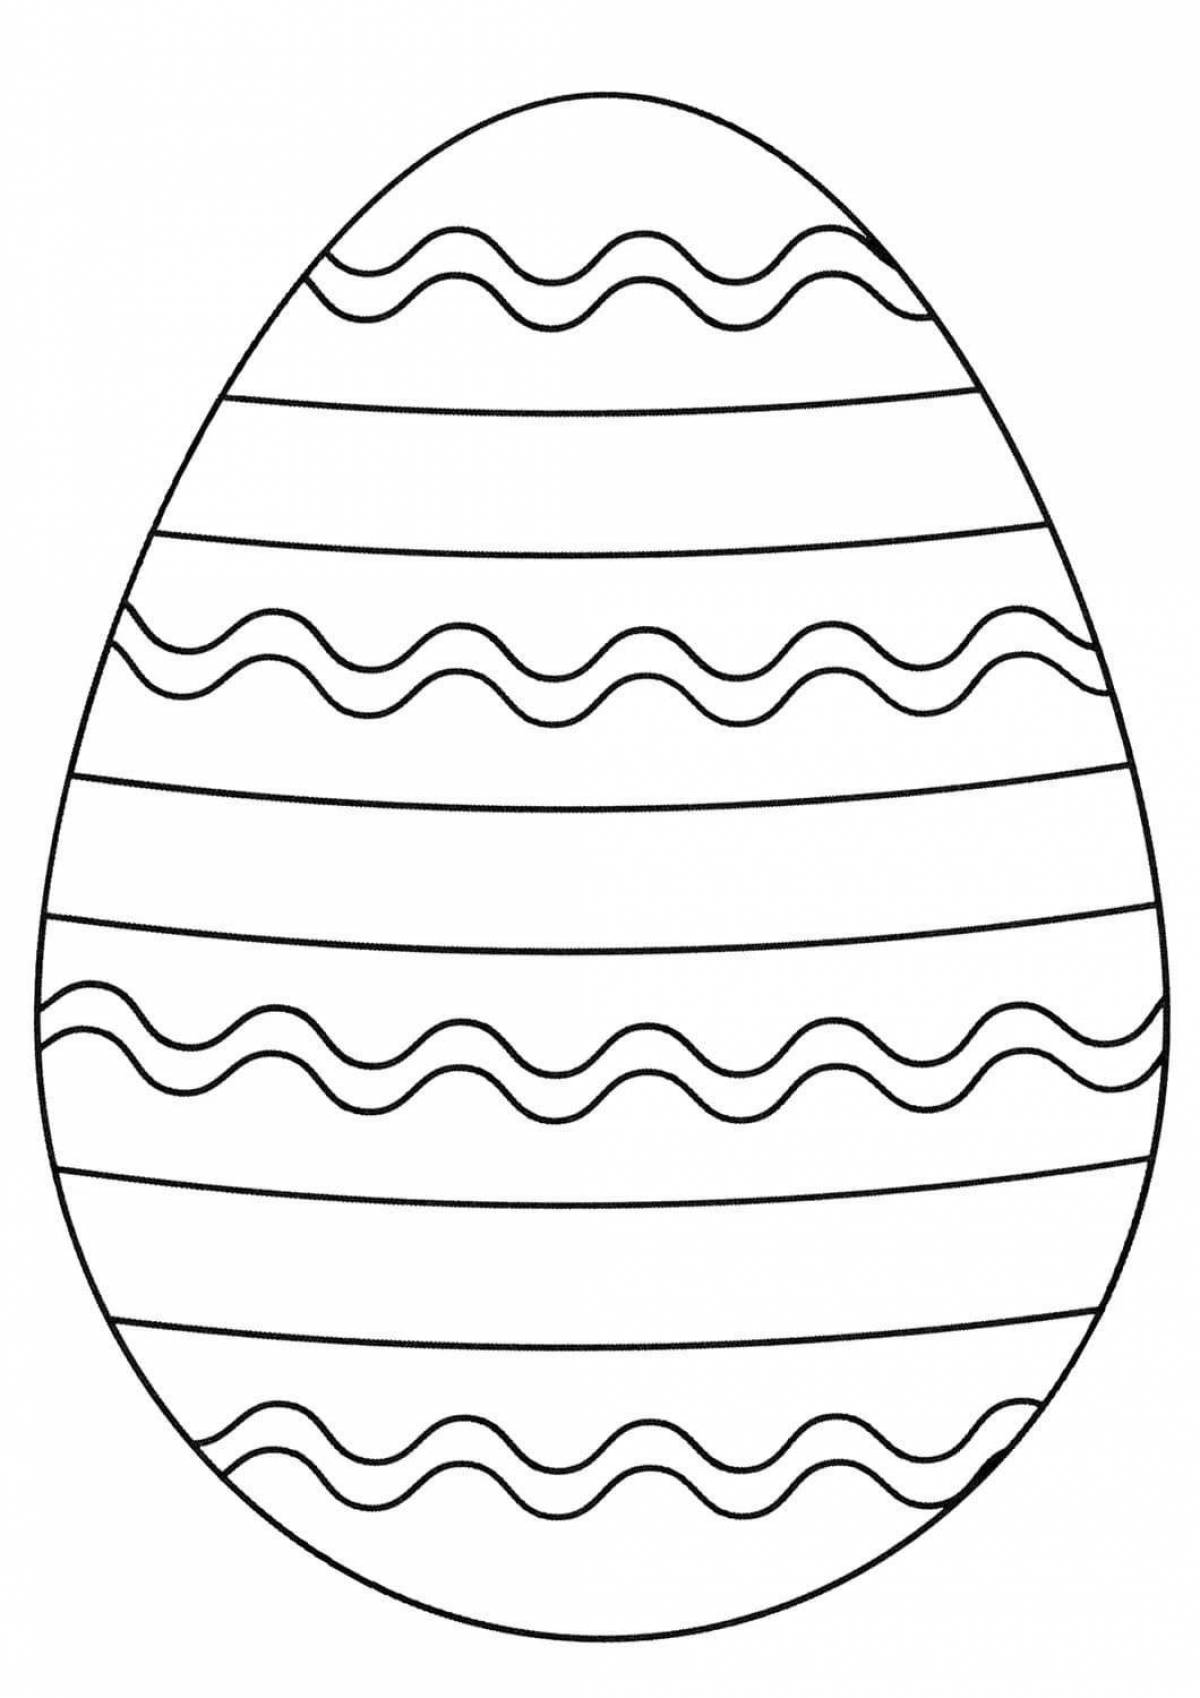 Подробная раскраска яйца